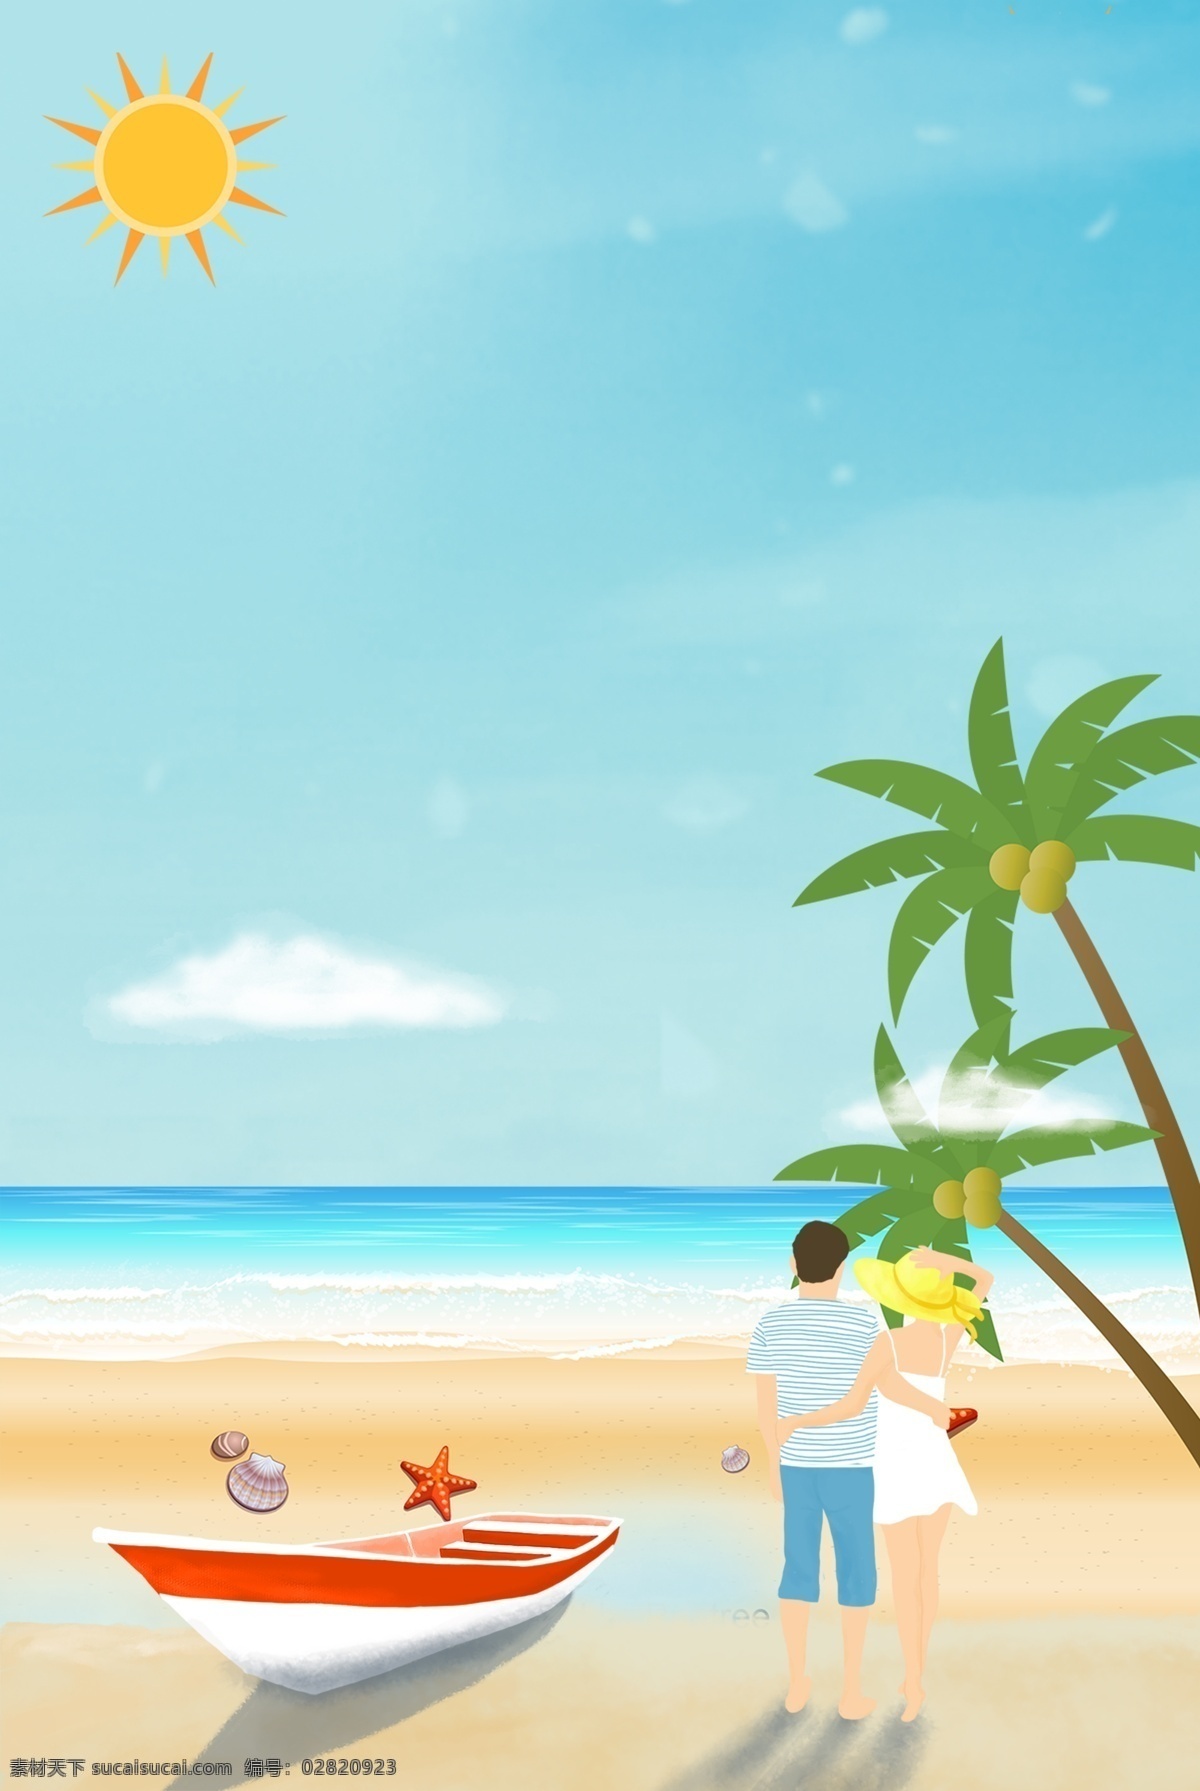 夏日 海边 度假旅游 夏天 海滩 度假 太阳 自驾游 汽车 大海 插画 夏天风景 夏日海边风景 海边风光 棕榈树